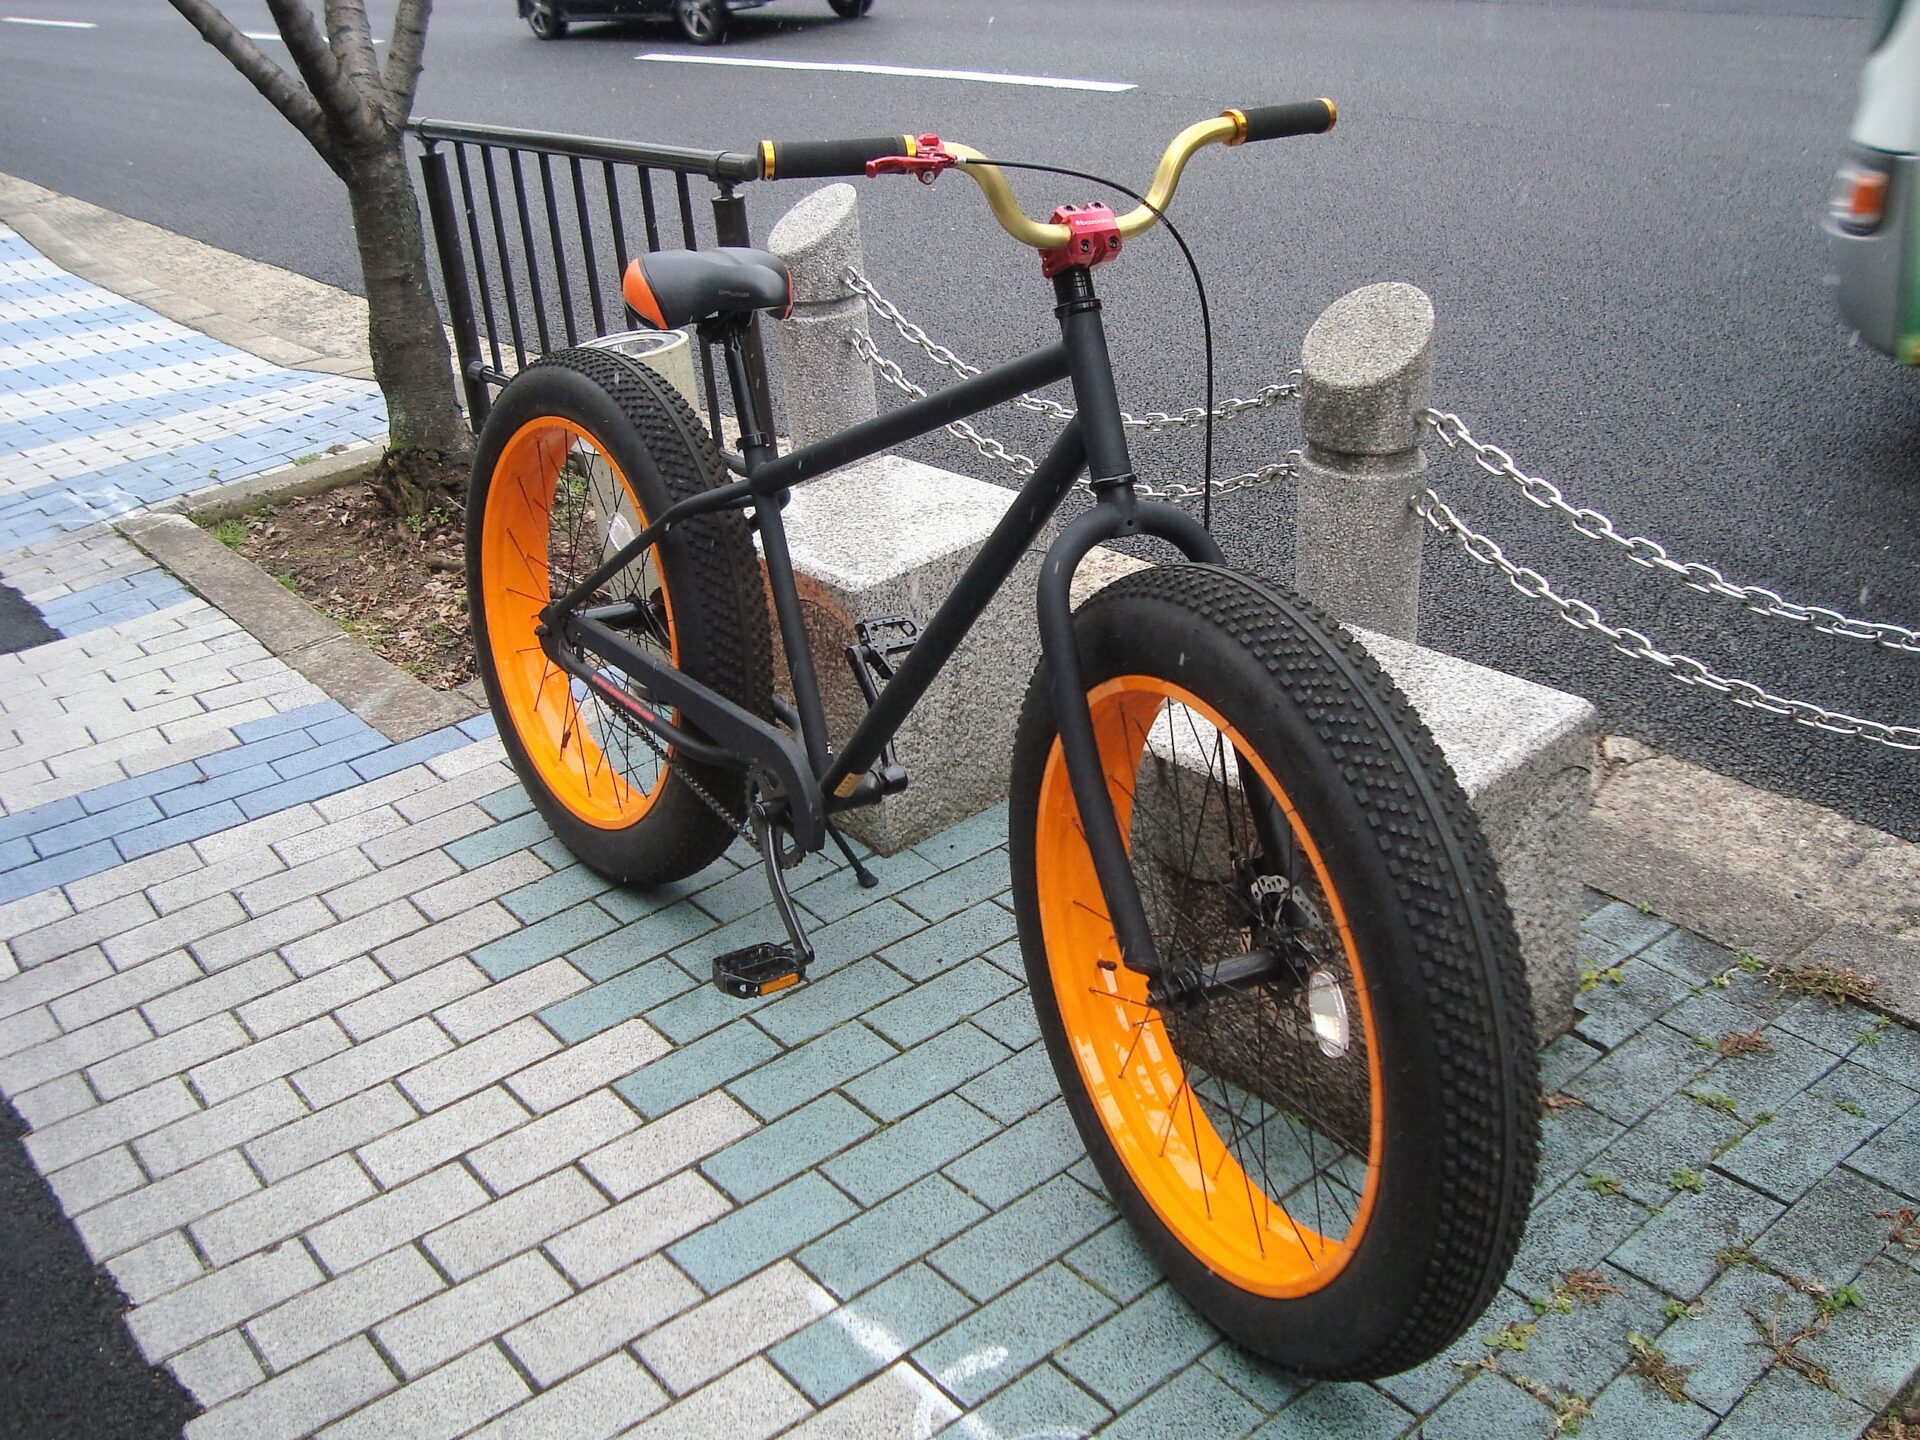 7246円 毎日激安特売で 営業中です 訳あり品 自転車 ファットバイク 26インチ 大阪 兵庫 直接引き渡し可能